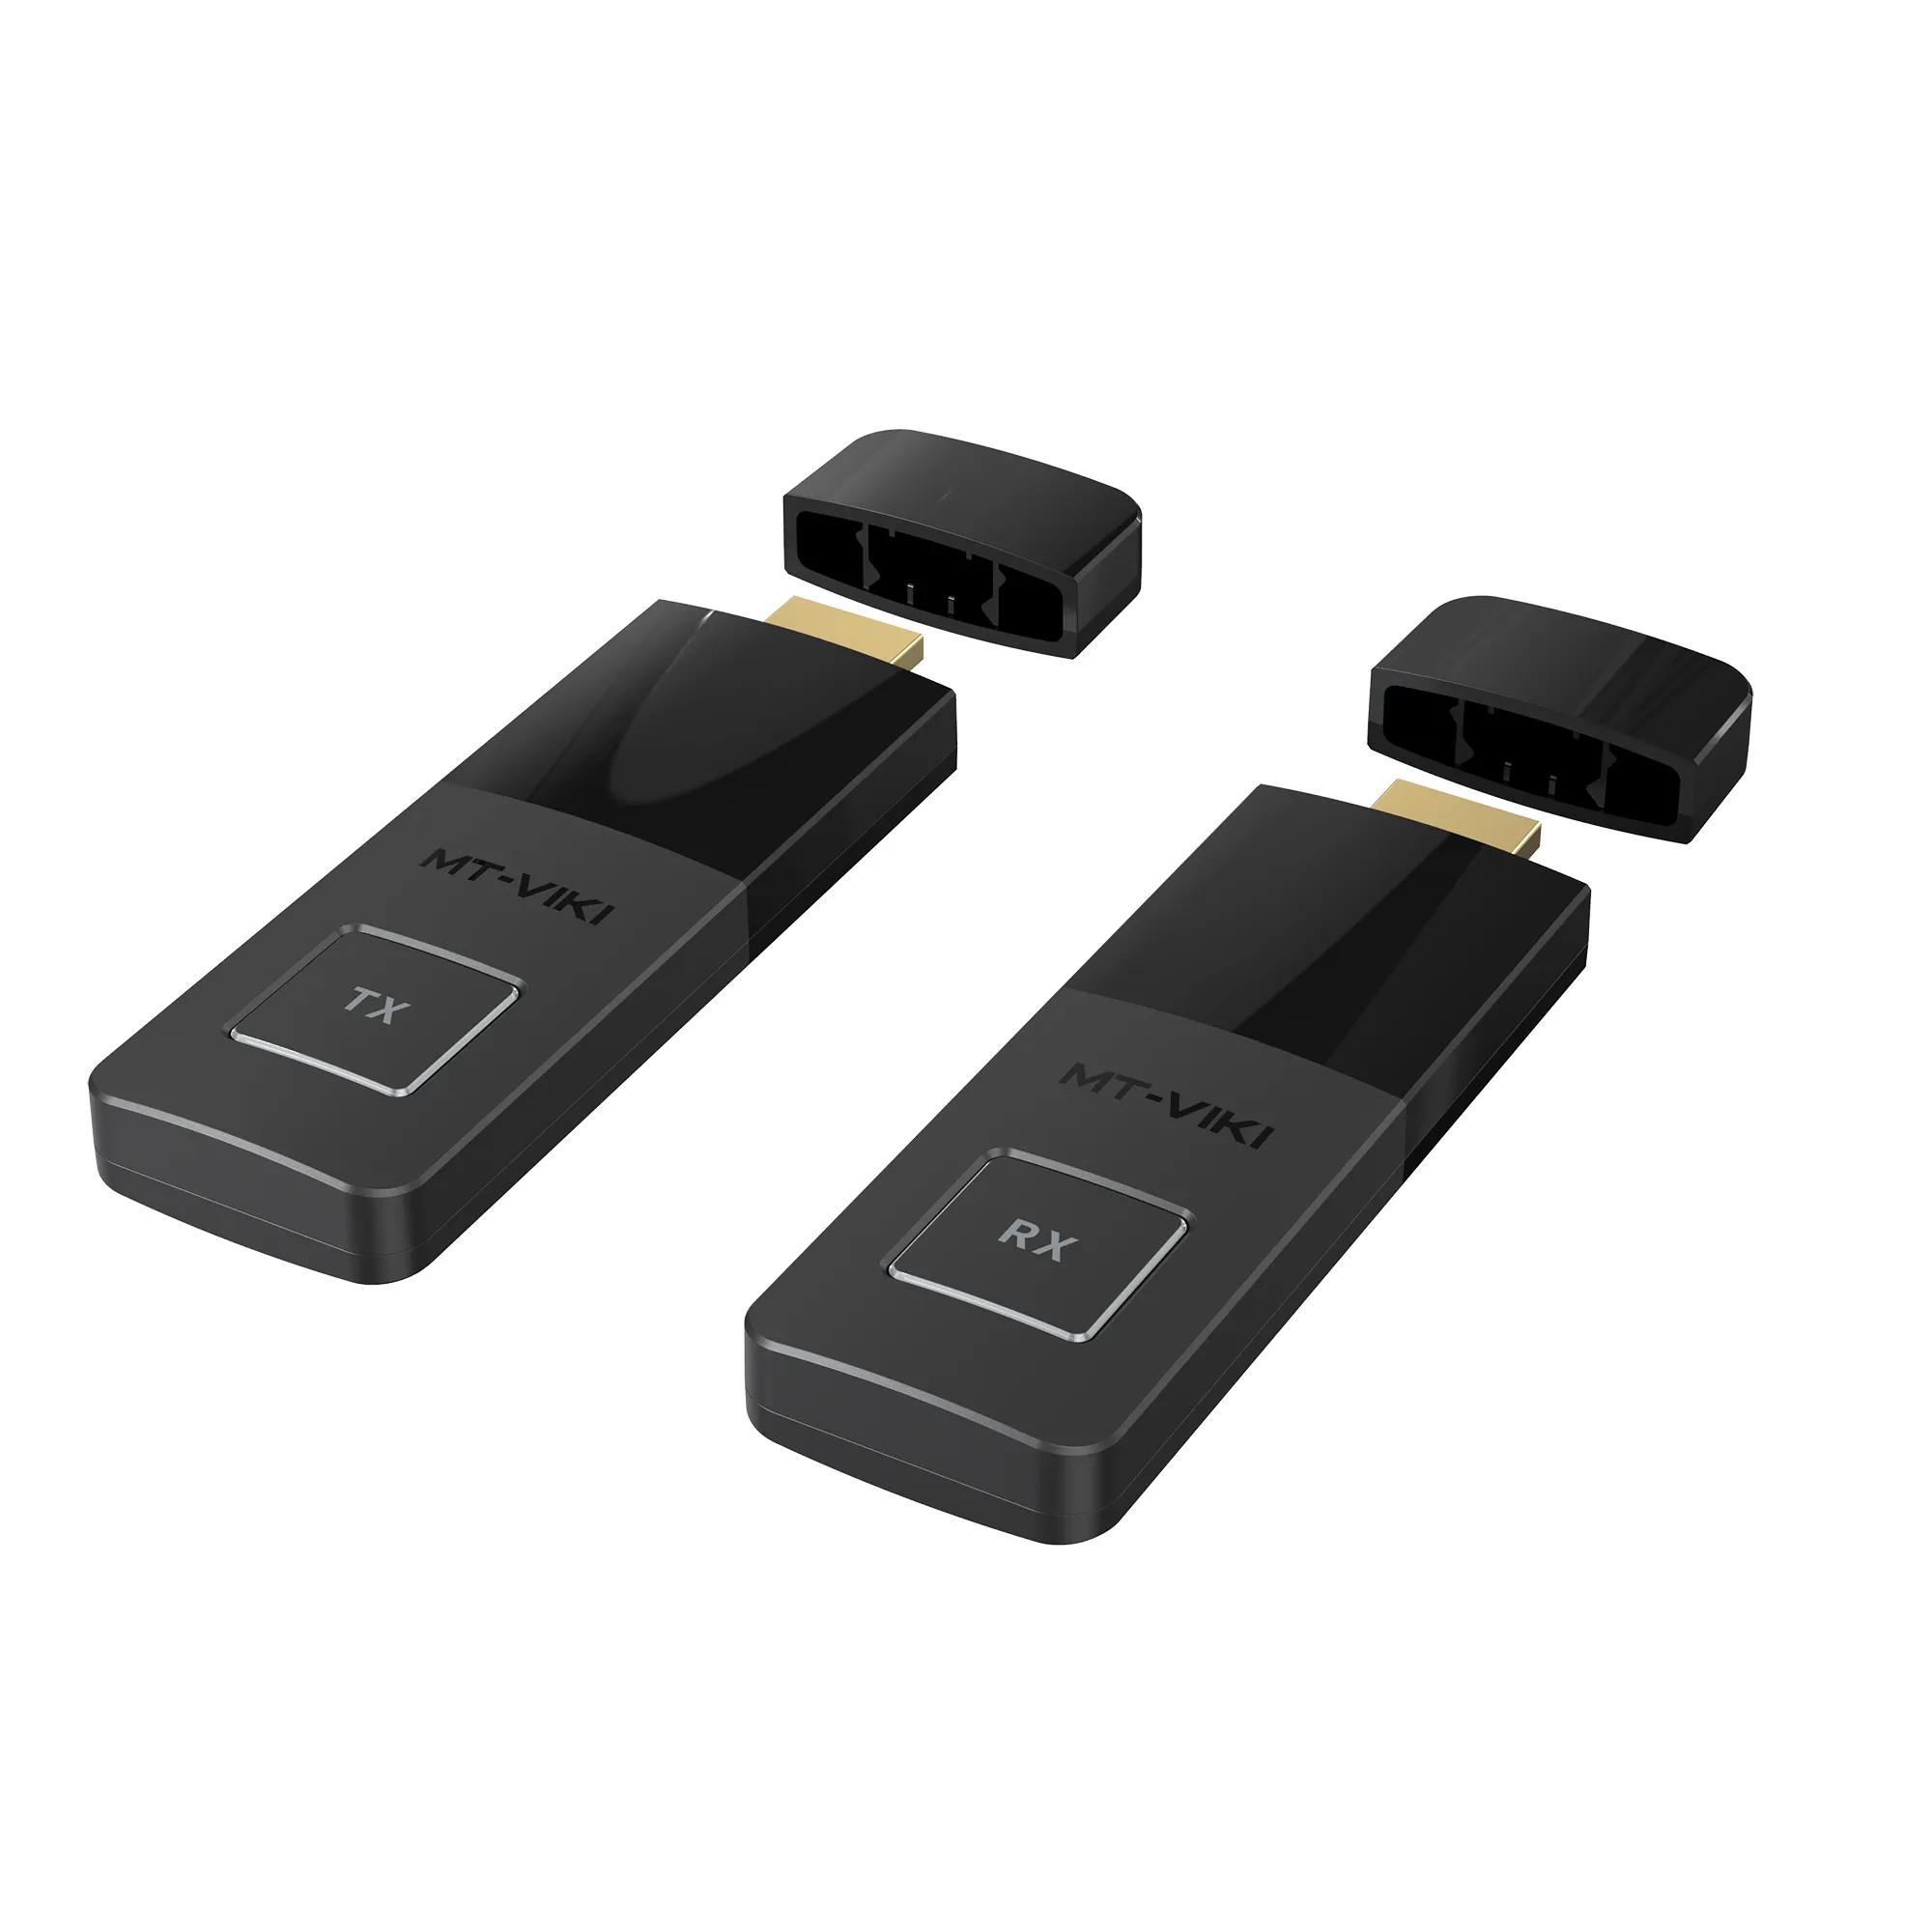 HDMI беспроводной передатчик и приемник 30 м/100ft, MT-VIKI портативный беспроводной HDMI удлинитель для конференц-зала